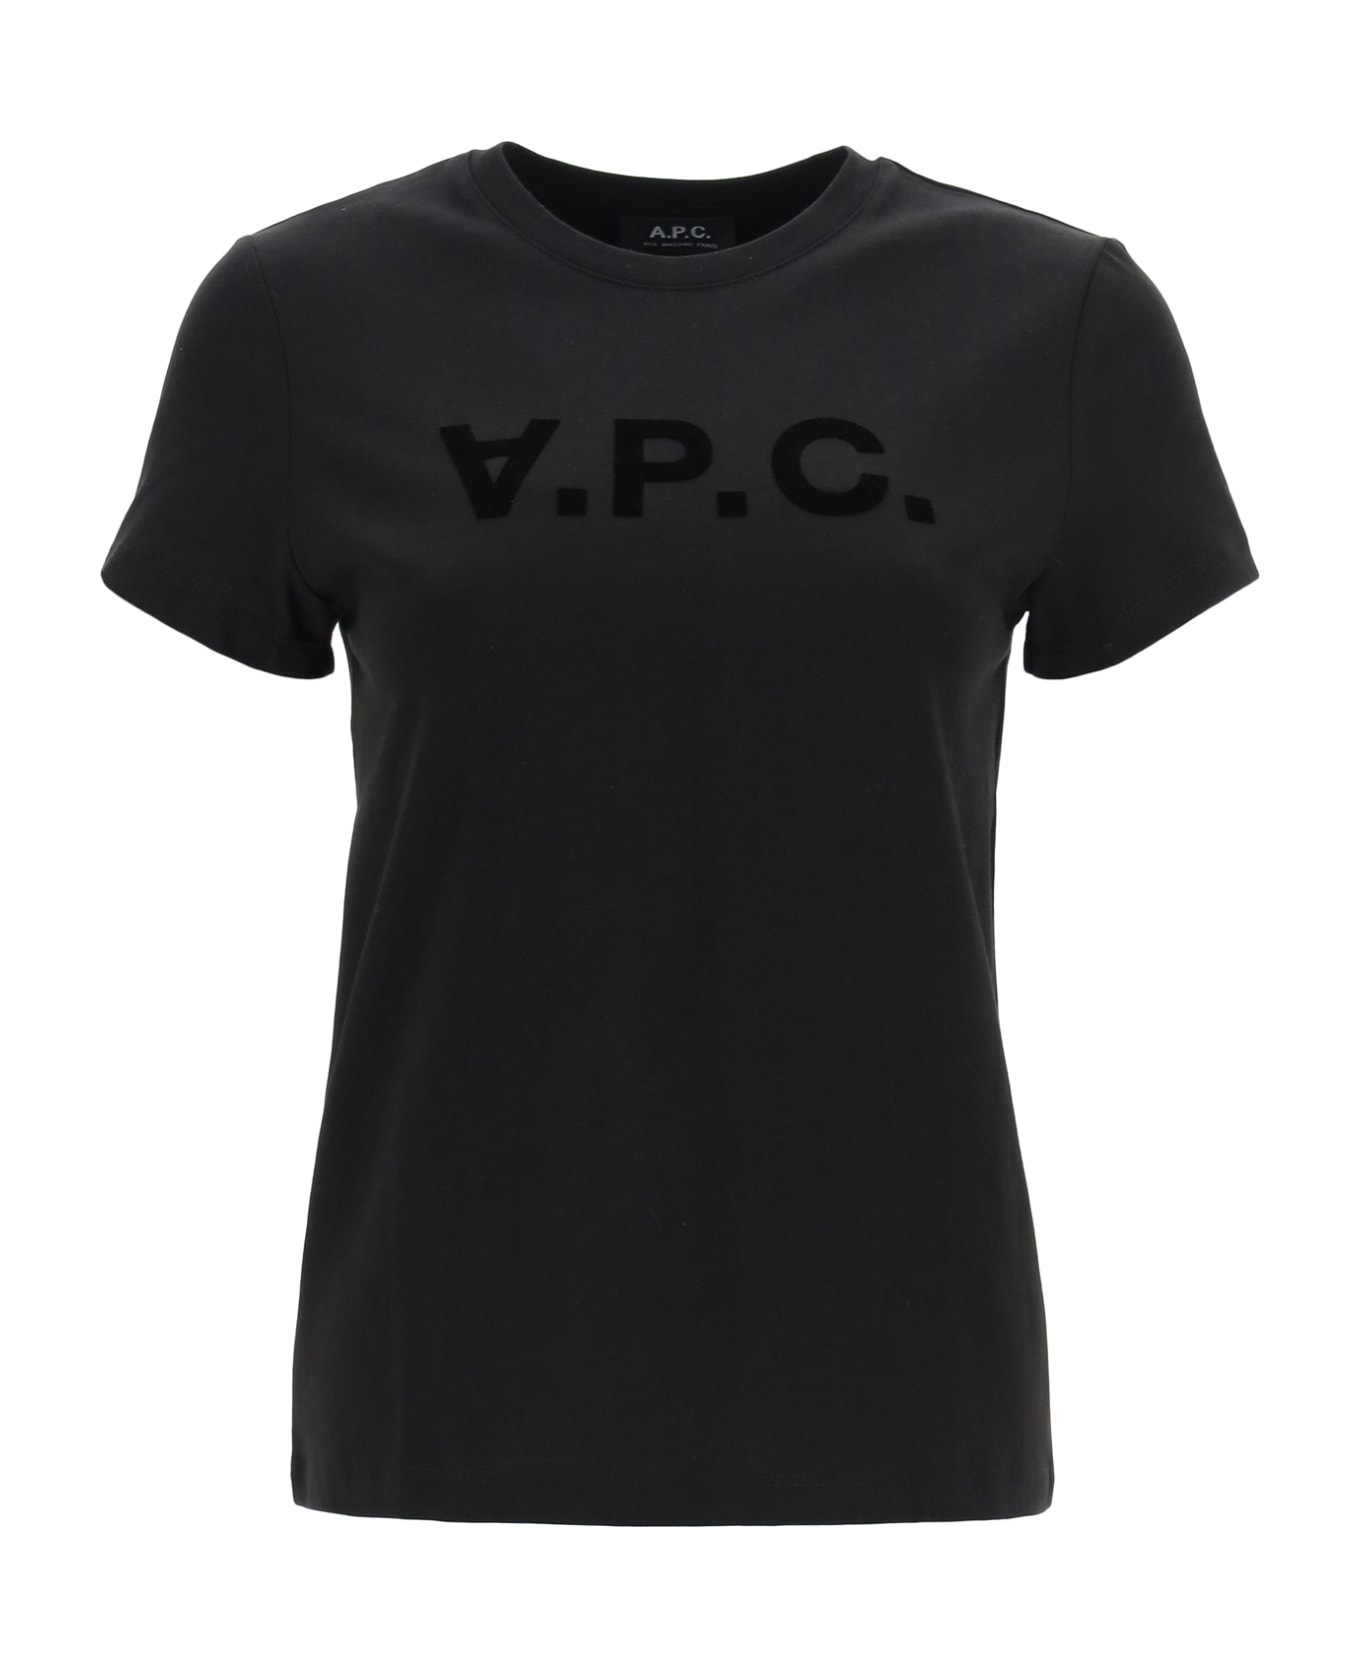 A.P.C. Vpc Logo T-shirt - Lzz Black